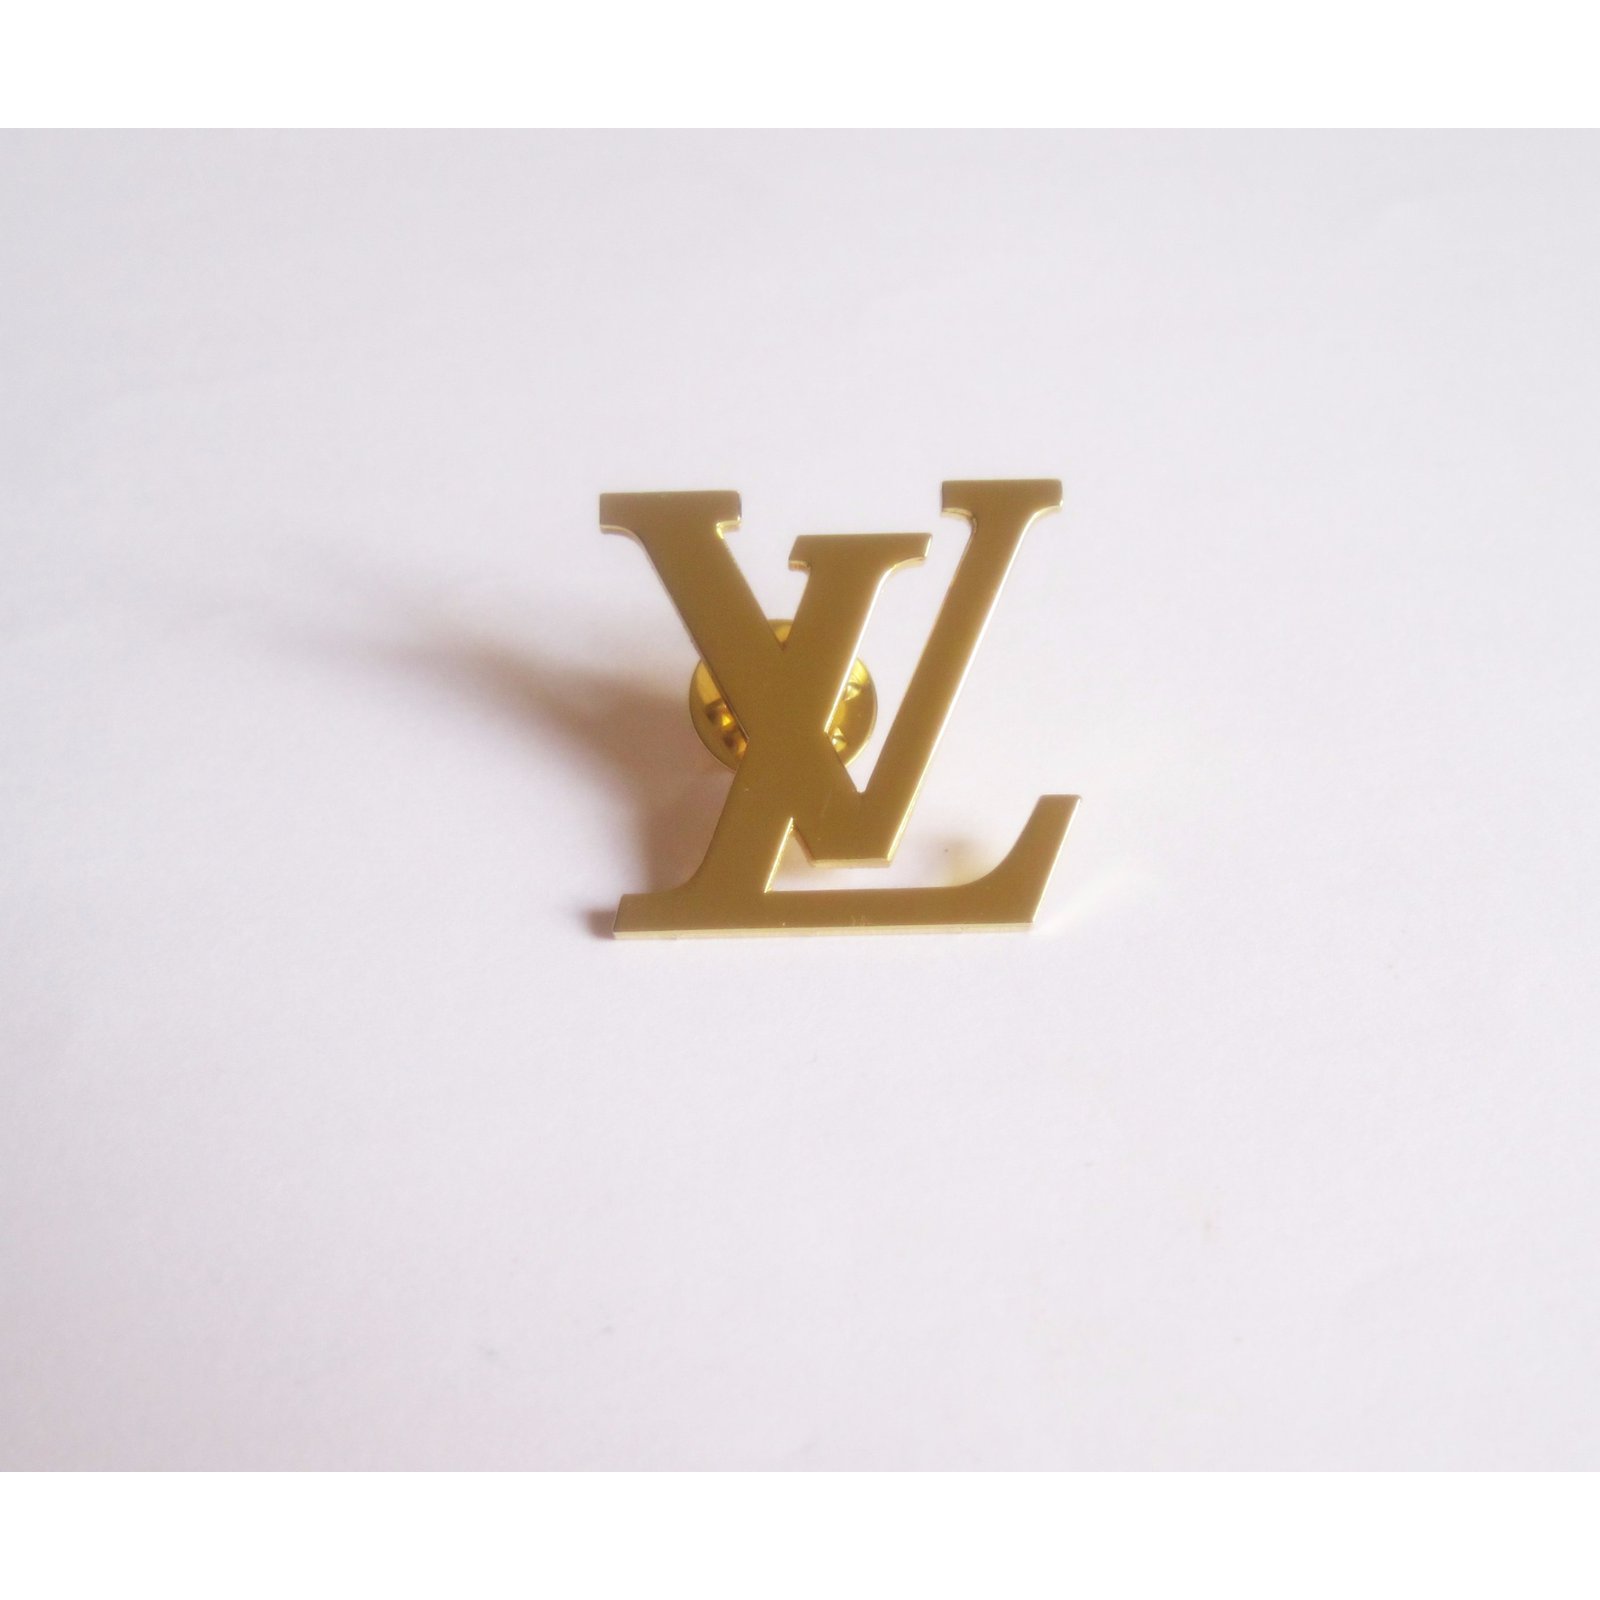 Louis Vuitton brooch